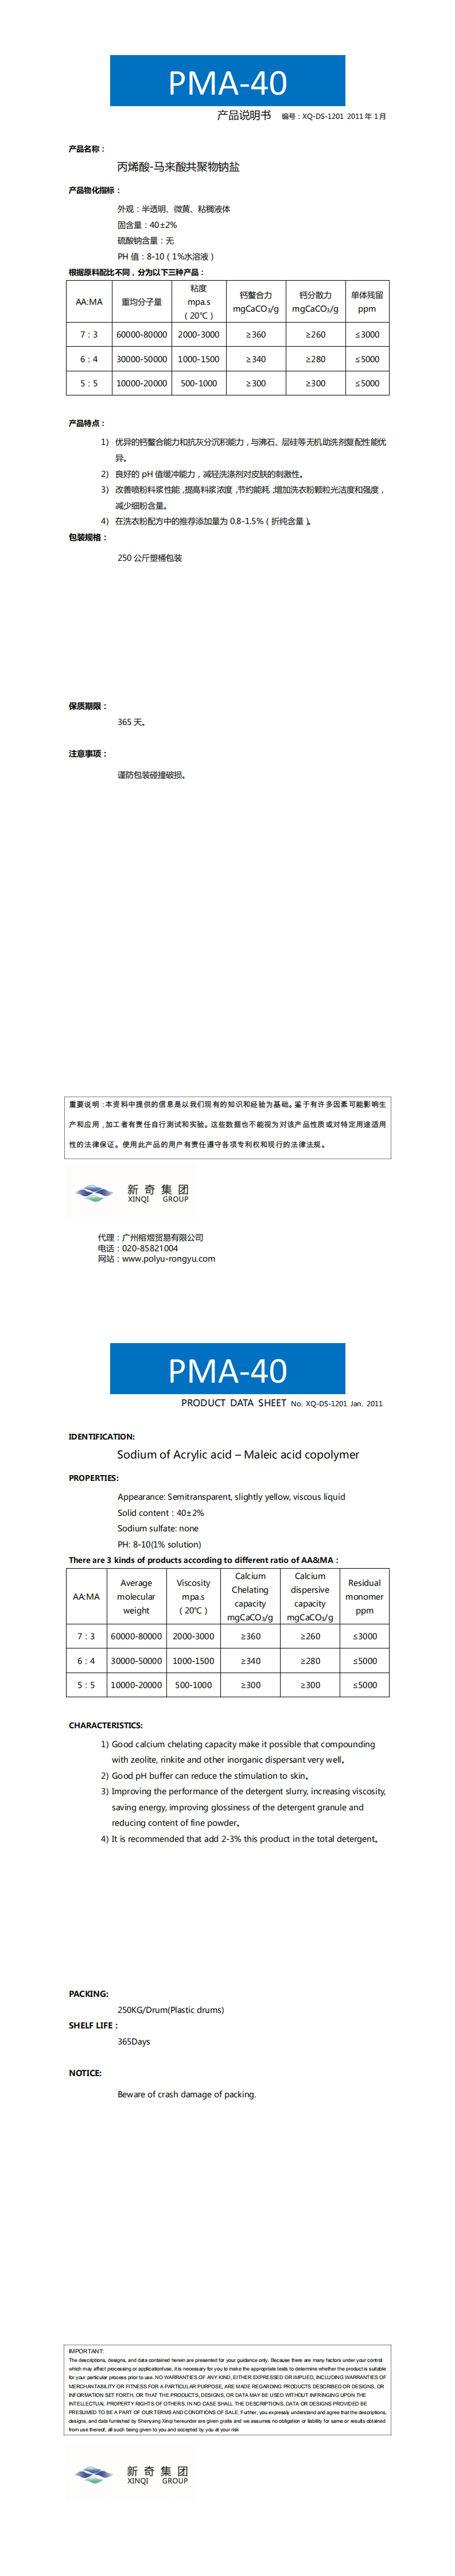 PMA-40_0.png